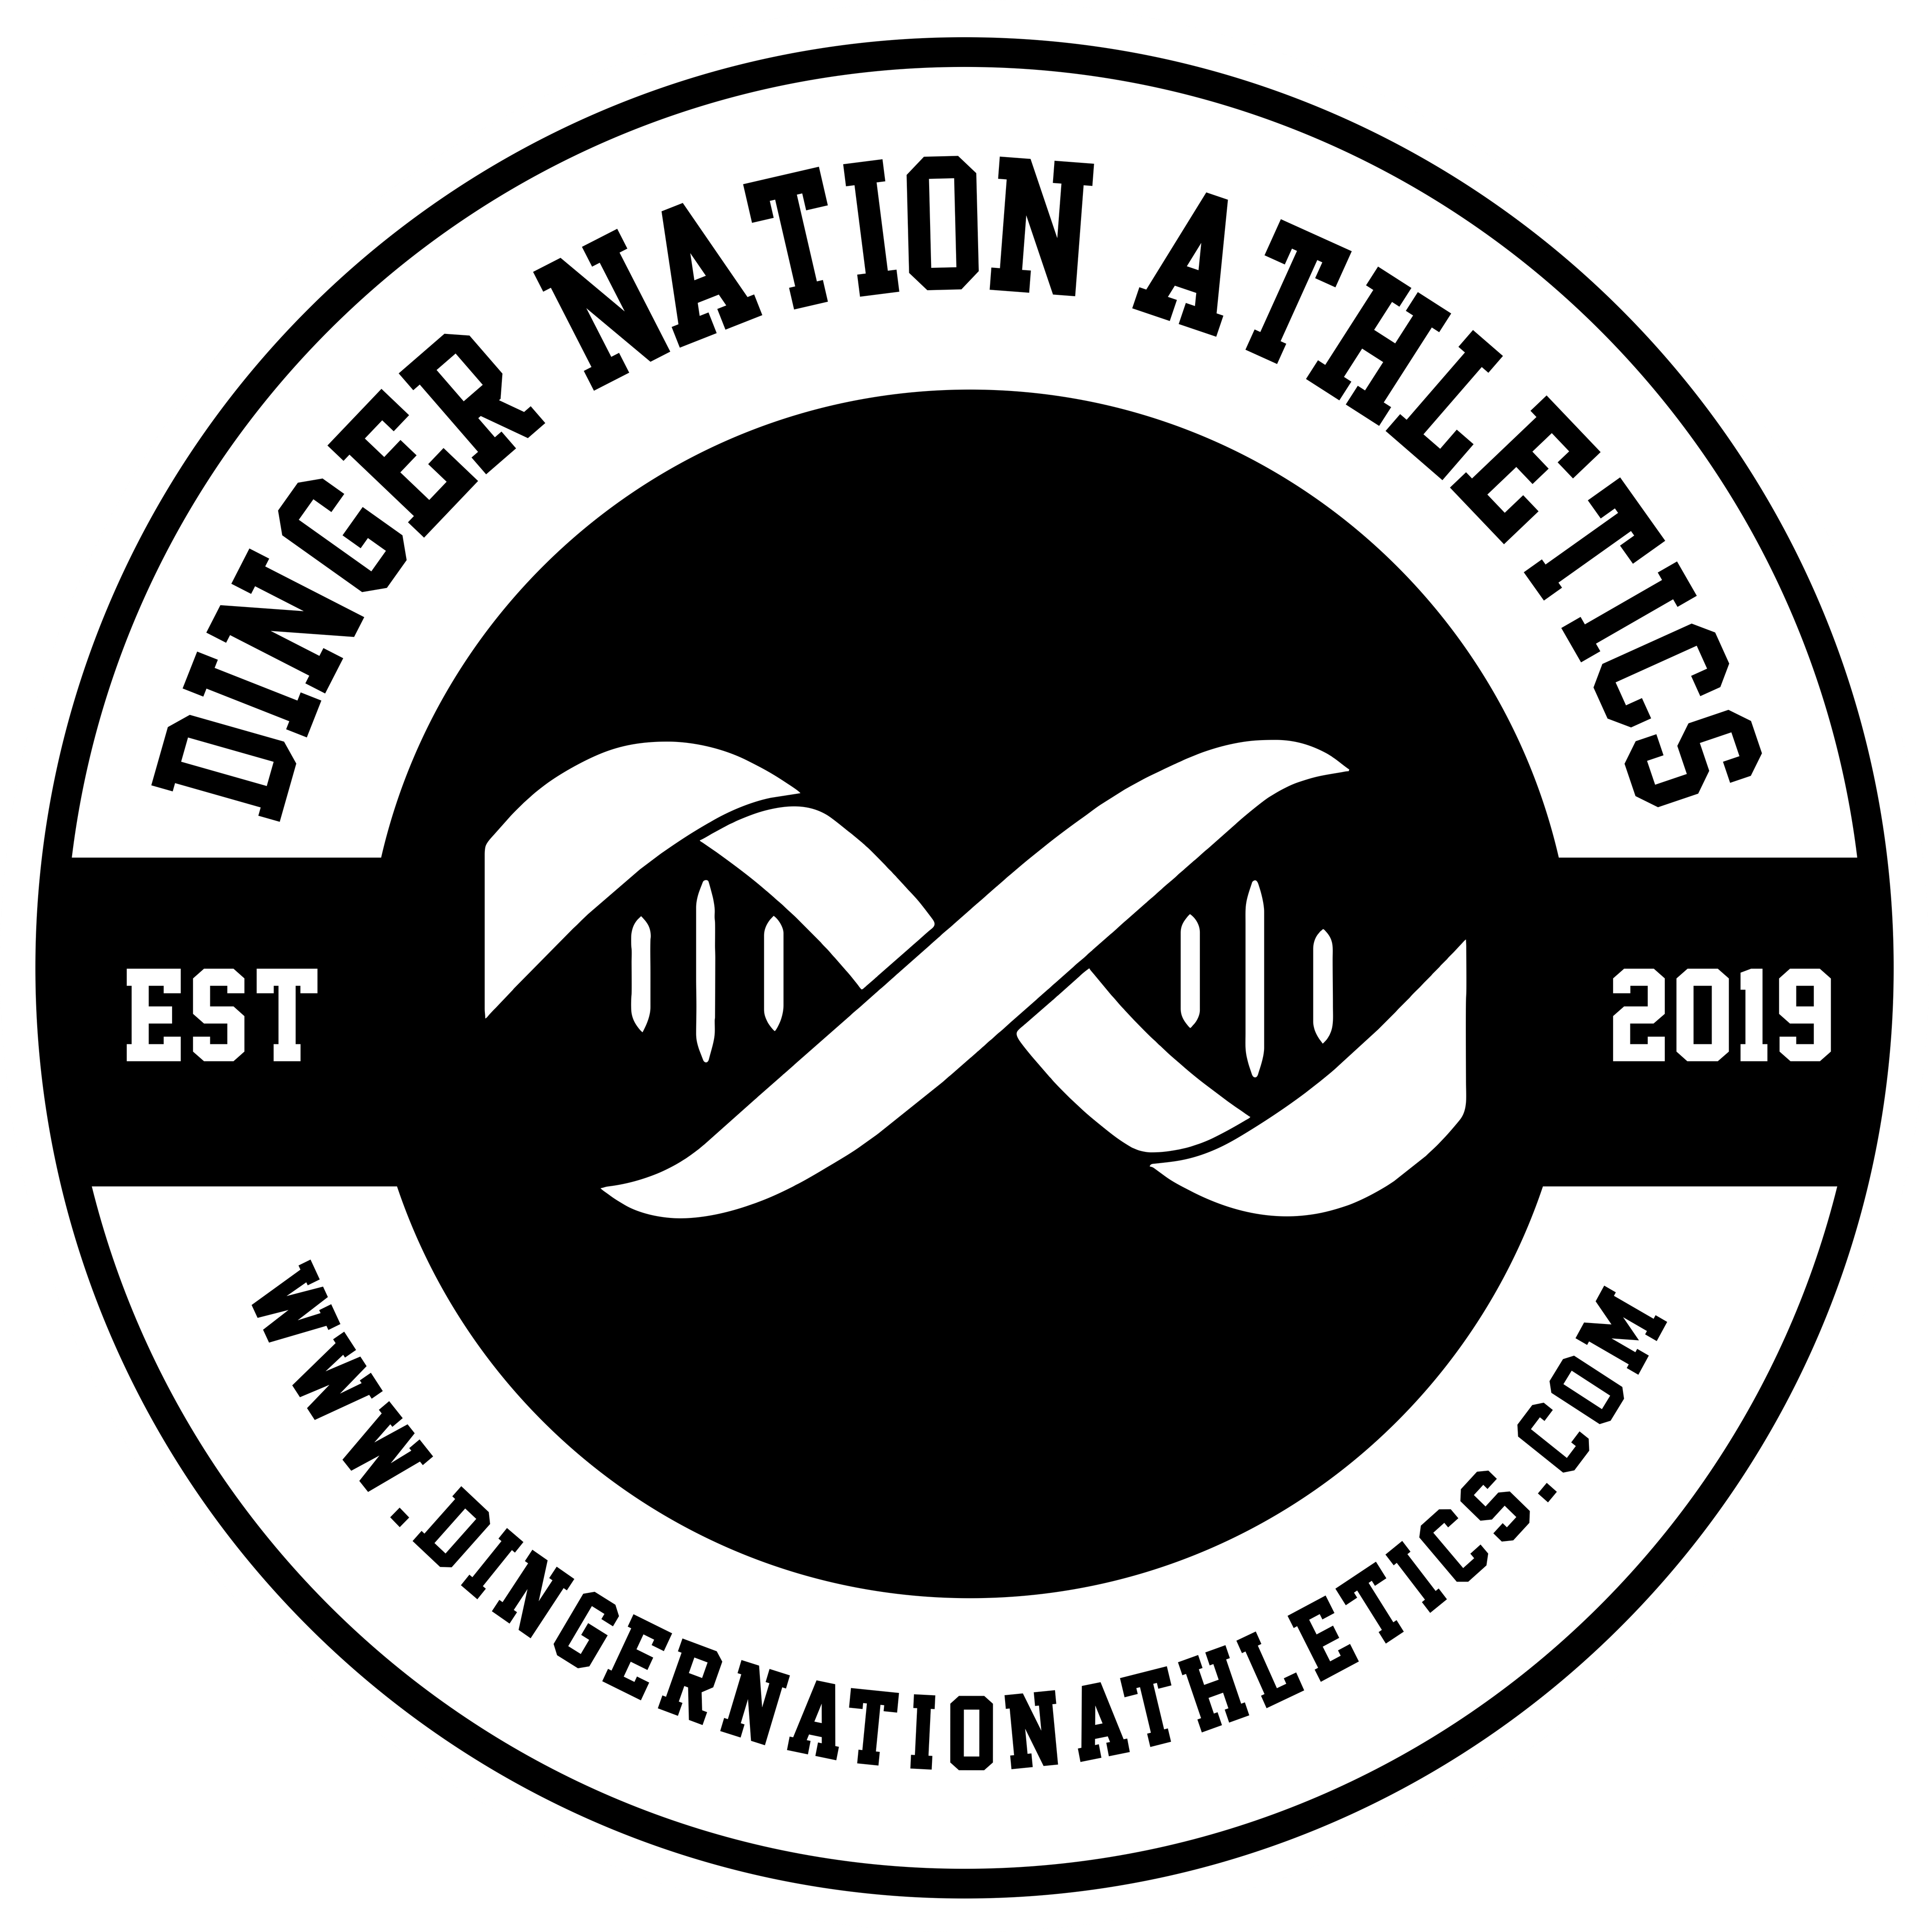 Dinger Nation Athletics